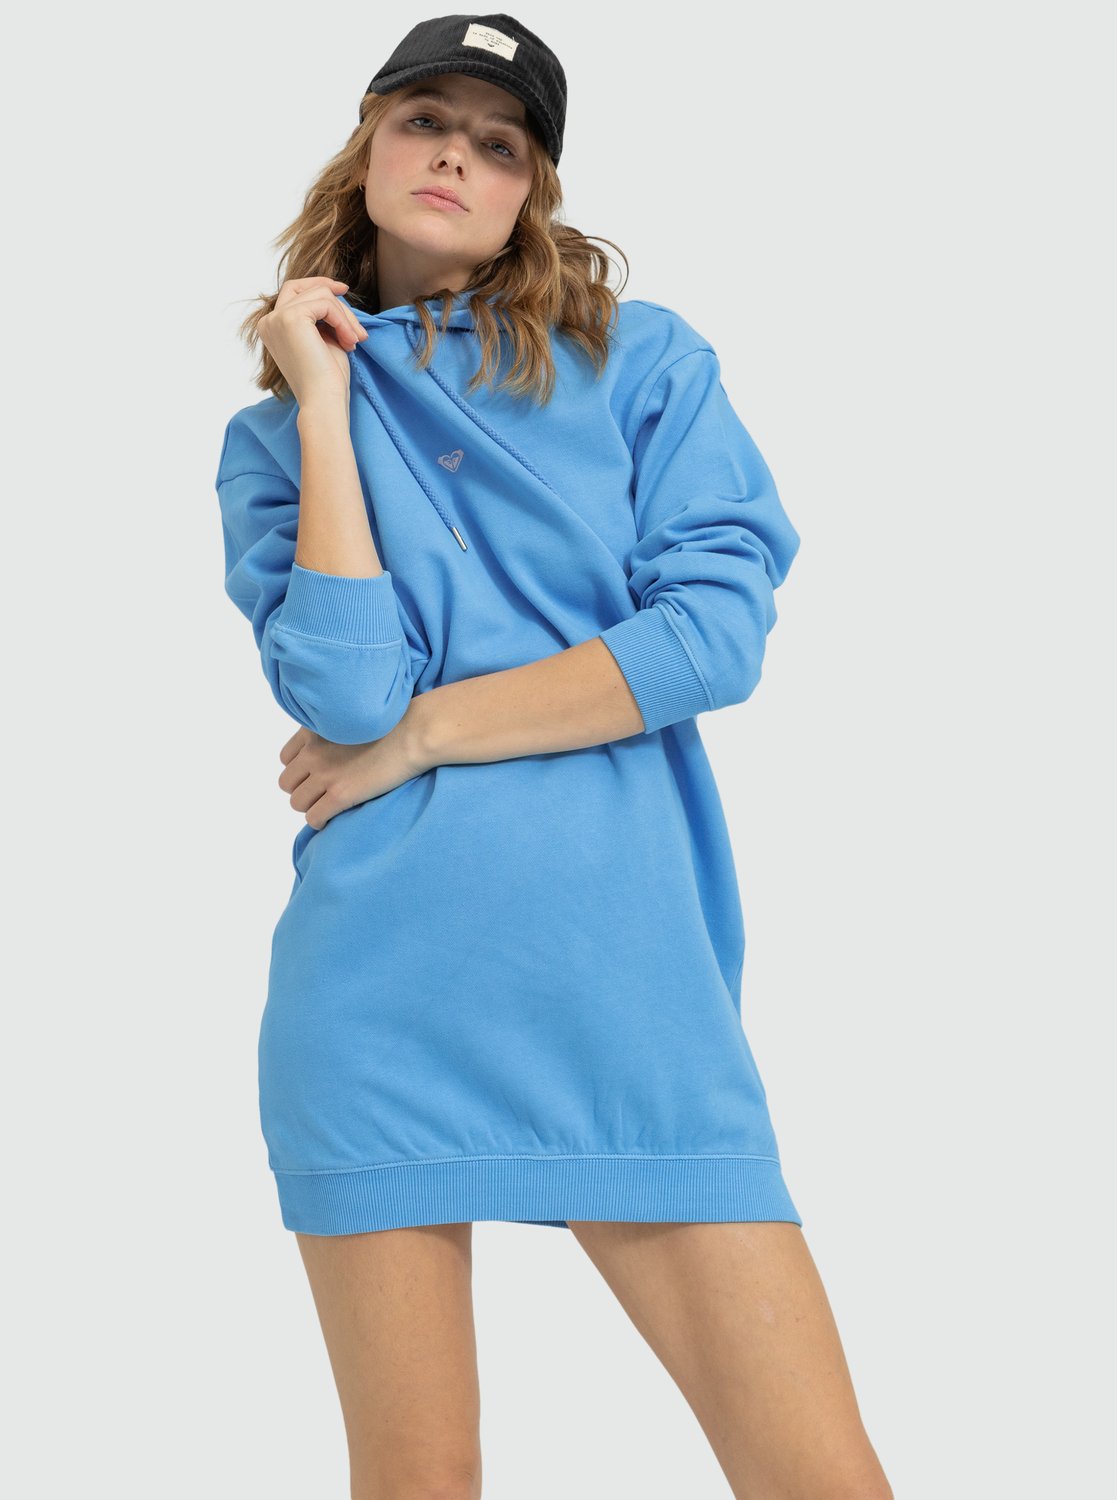 Robe sweat bleue de la marque Roxy